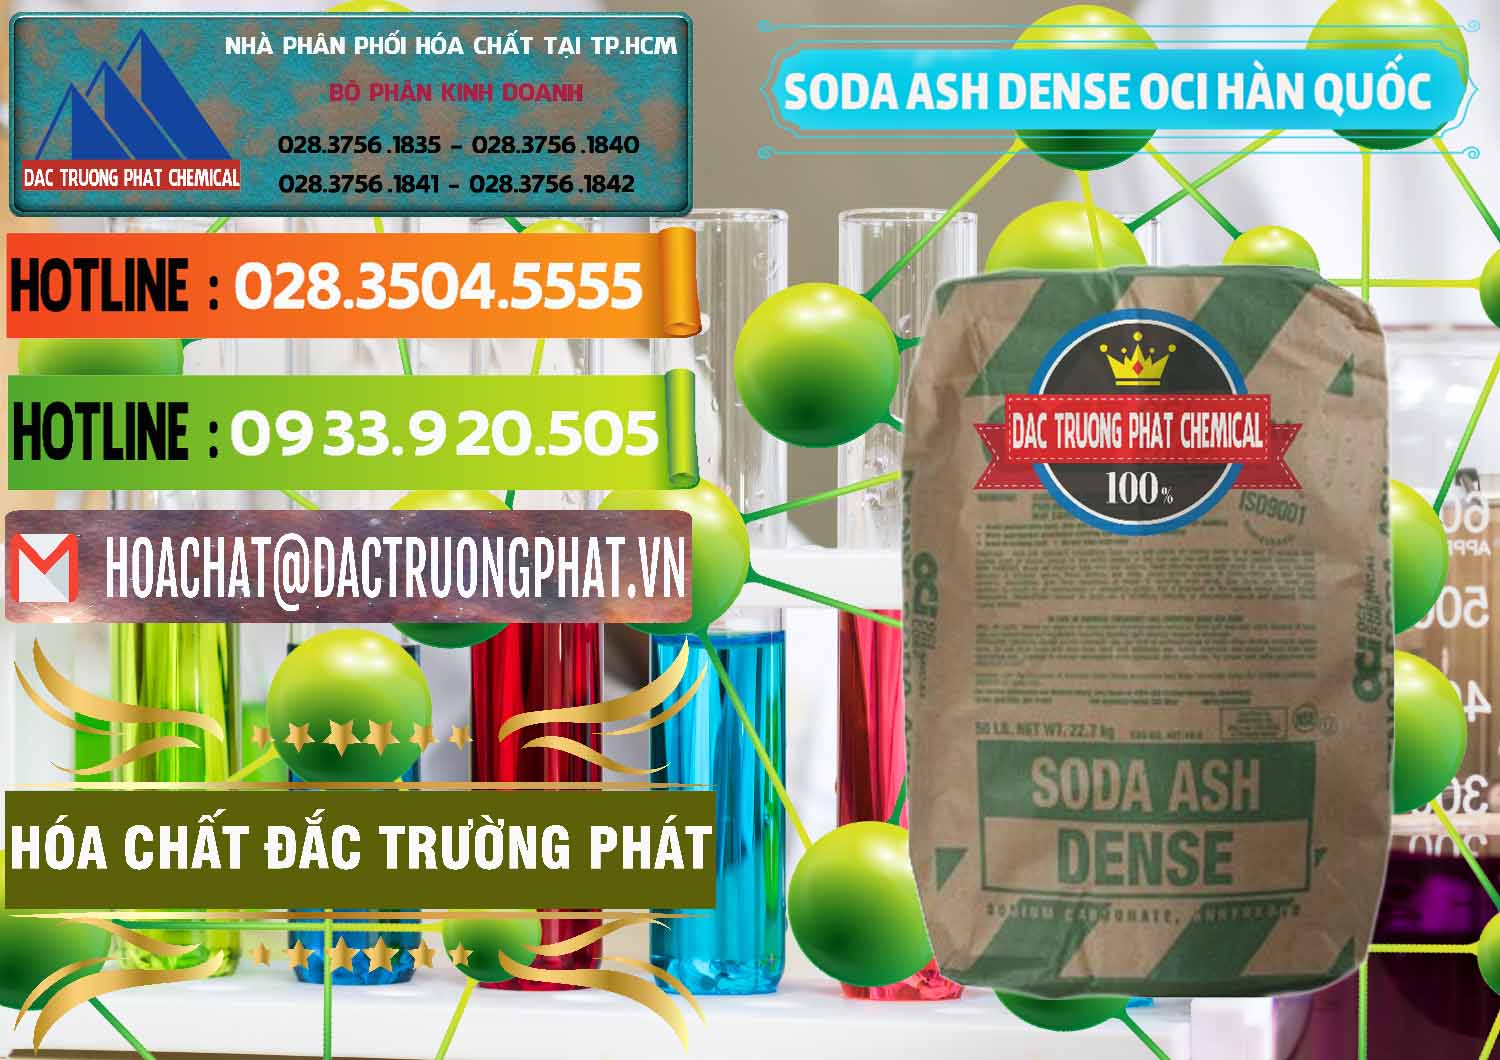 Nơi chuyên bán ( cung cấp ) Soda Ash Dense - NA2CO3 OCI Hàn Quốc Korea - 0338 - Cung cấp ( bán ) hóa chất tại TP.HCM - cungcaphoachat.com.vn